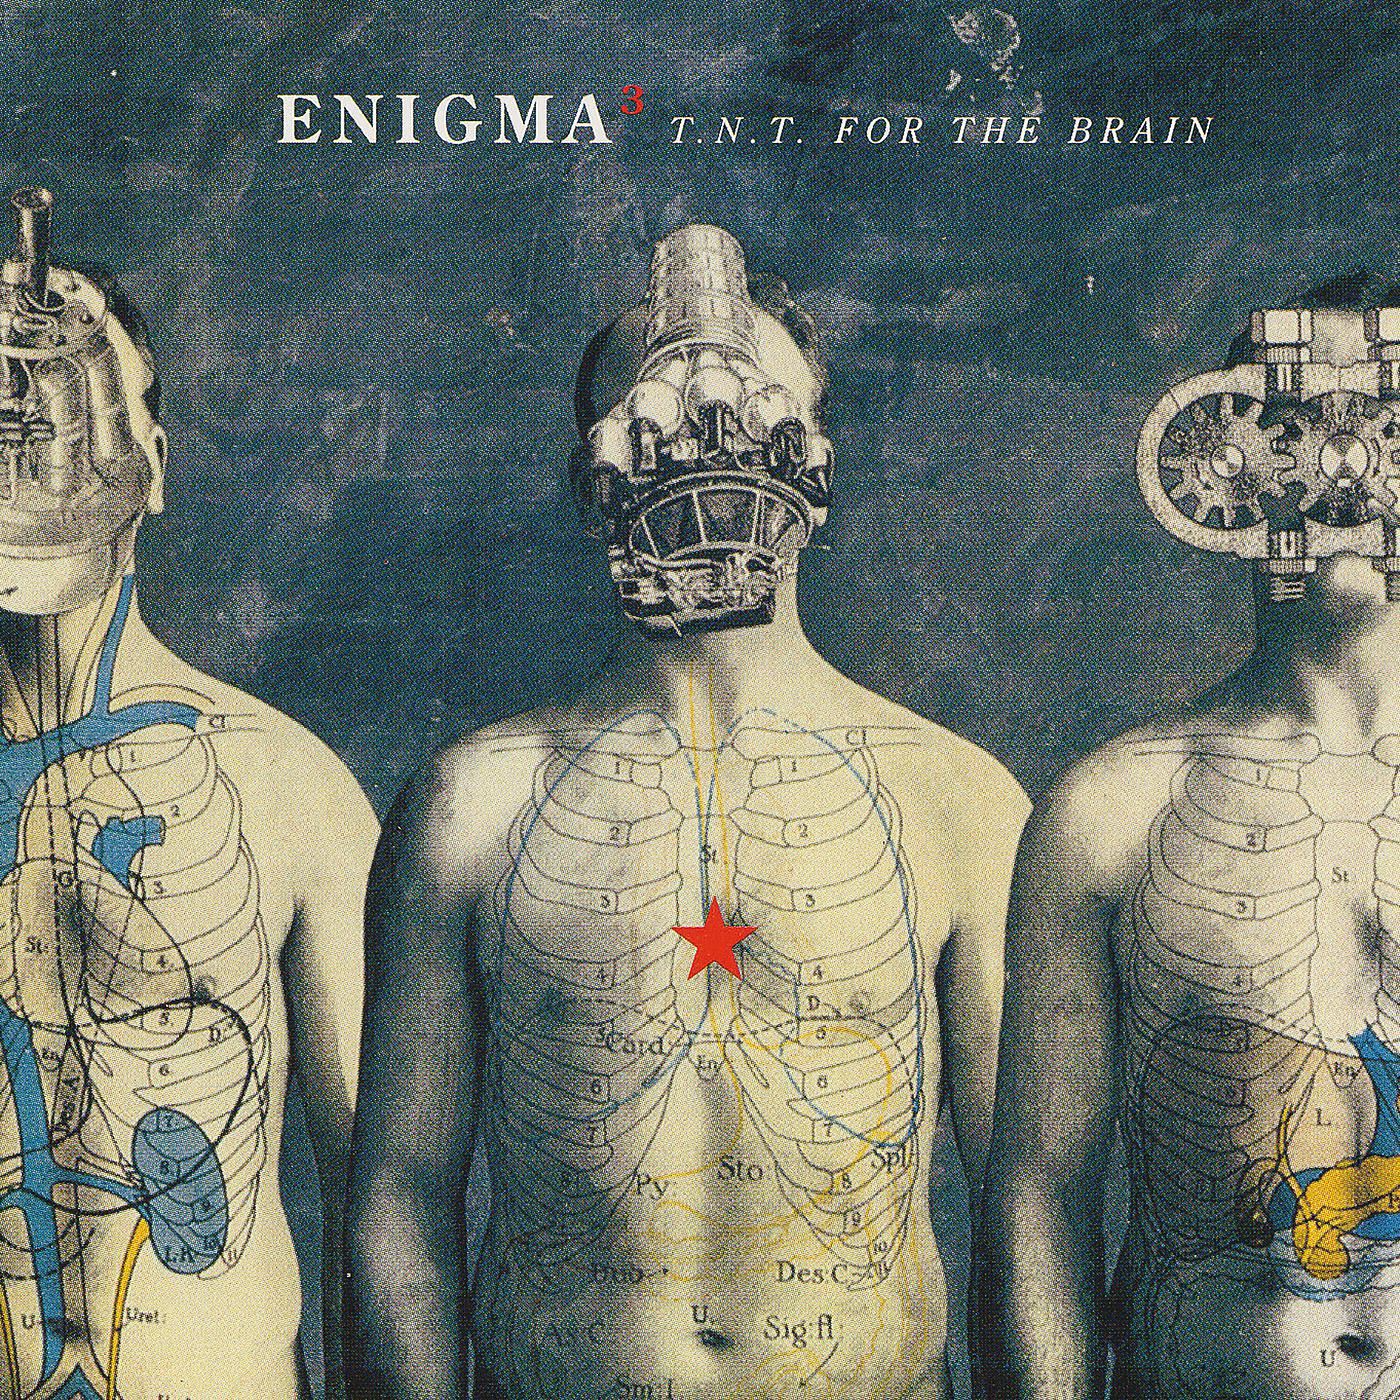 Le roi est mort. Enigma 3. Enigma обложки альбомов. Enigma TNT for the Brain обложка. Энигма группа обложки.